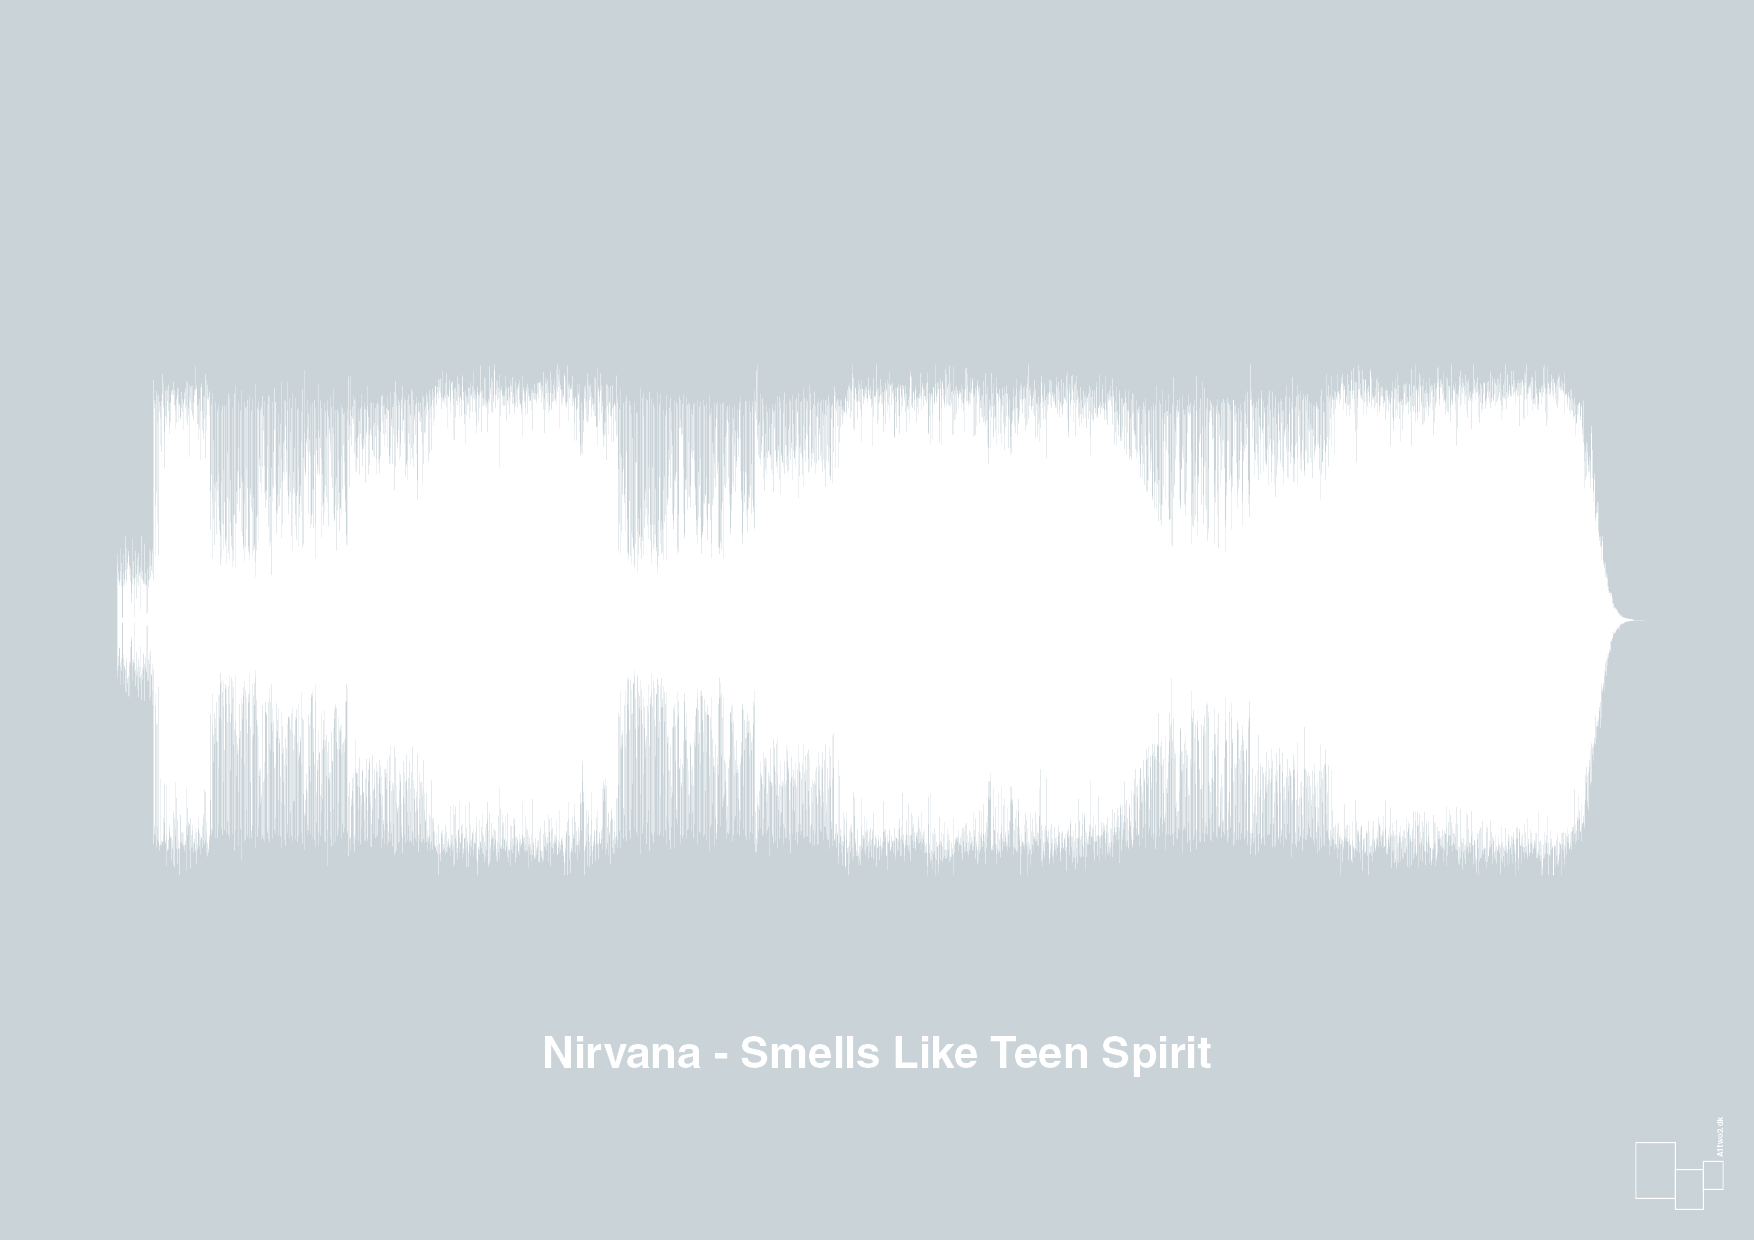 nirvana - smells like teen spirit - Plakat med Musik i Light Drizzle